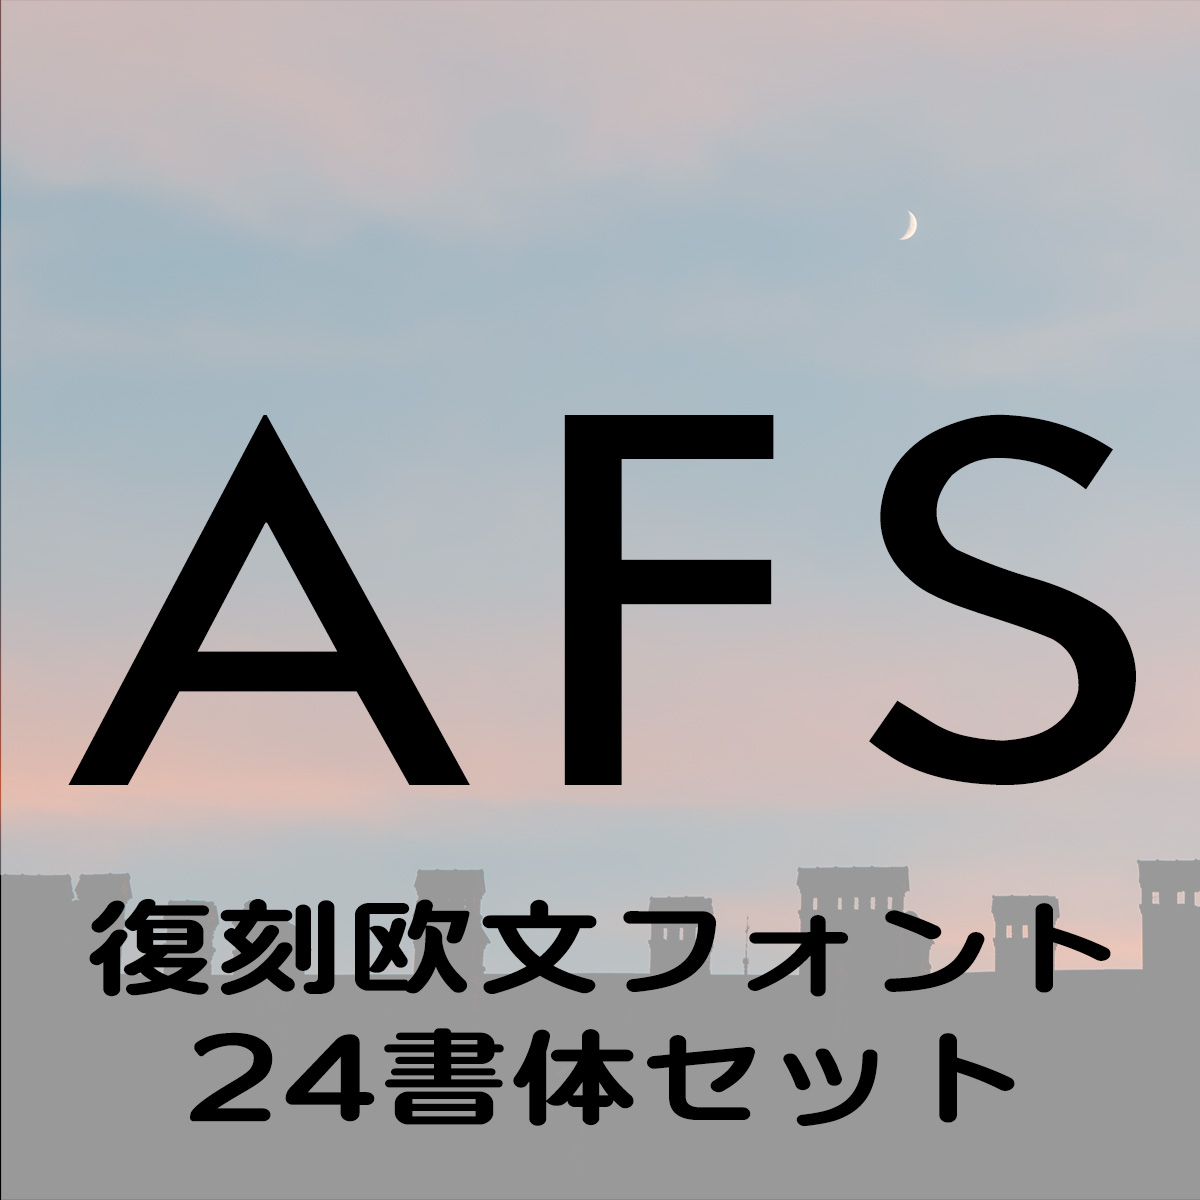 AFS復刻欧文フォント 24書体セット